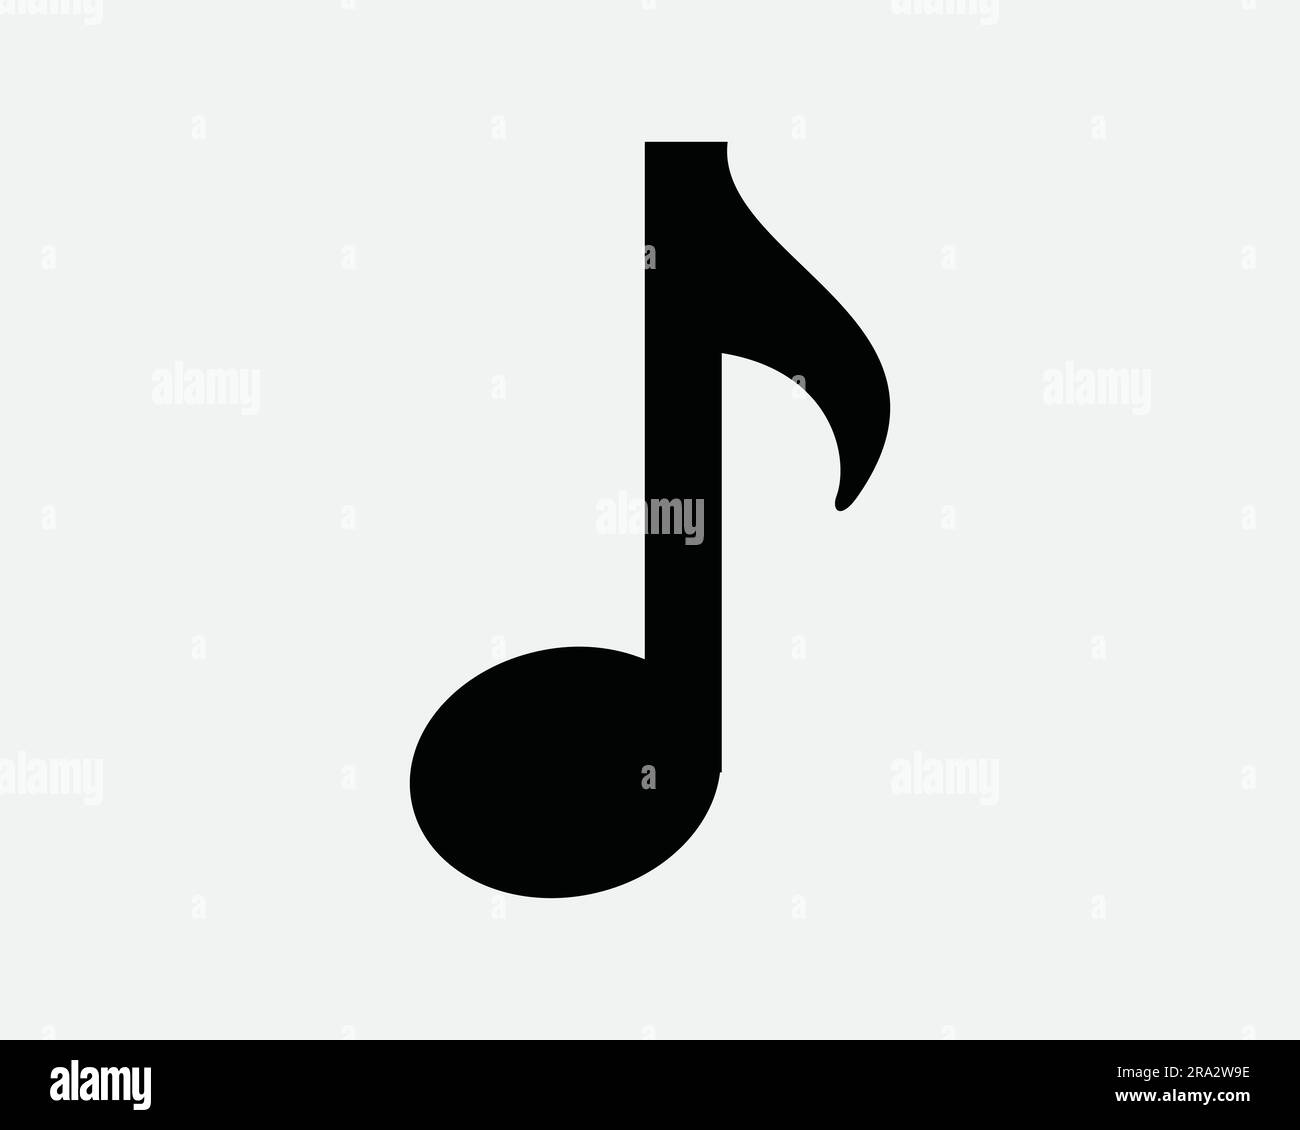 Icona Quaver Music. Nota musicale melodia Bass Tune Quater classica canzone tono forma audio. Grafica Clipart grafica bianco e nero simbolo EPS vettore Illustrazione Vettoriale